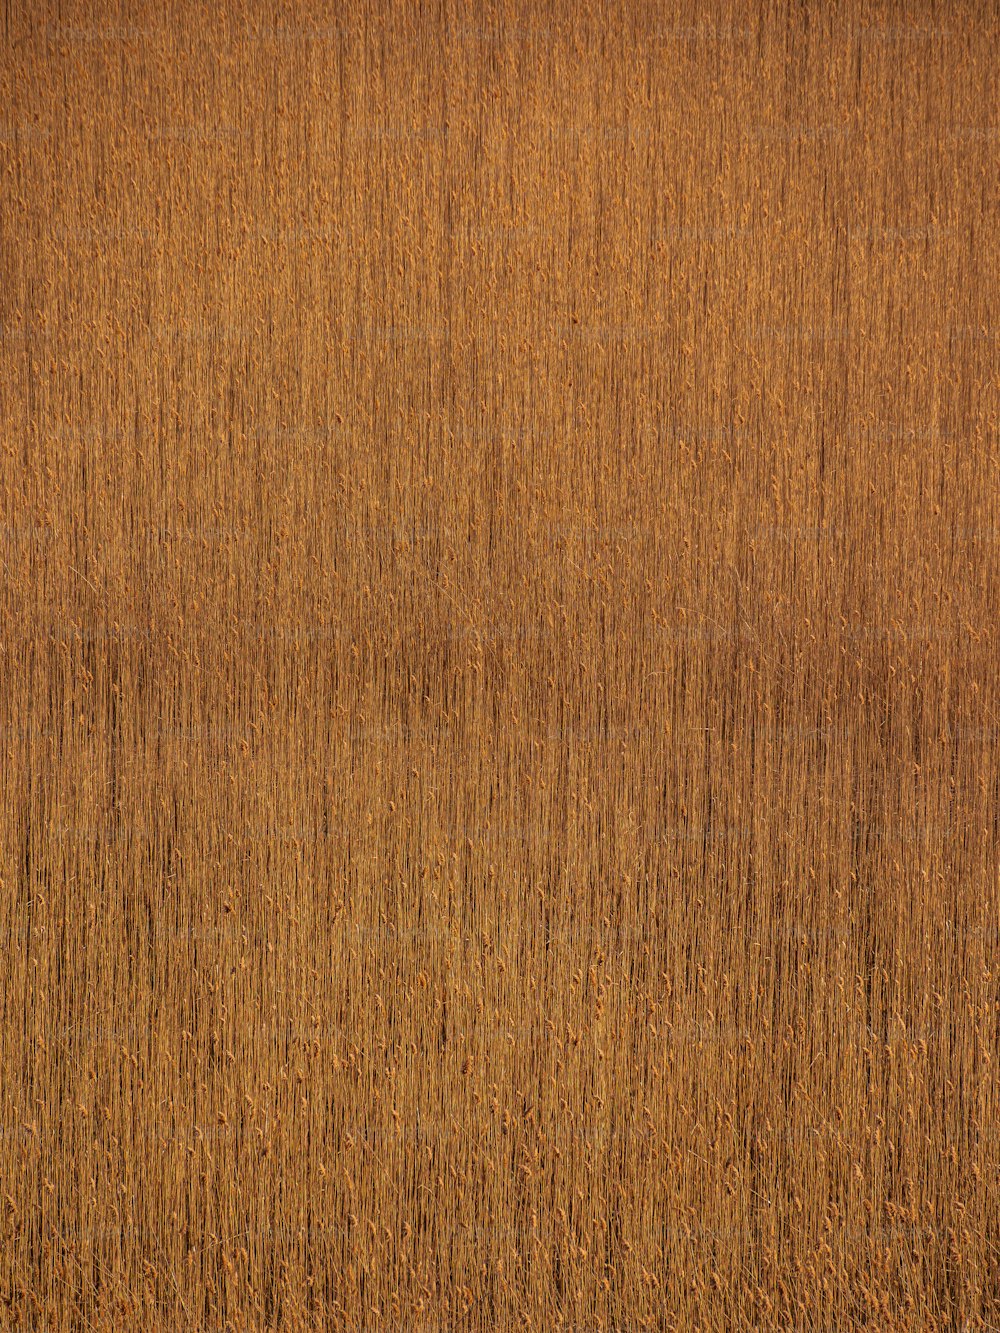 uma superfície de madeira com uma cor marrom